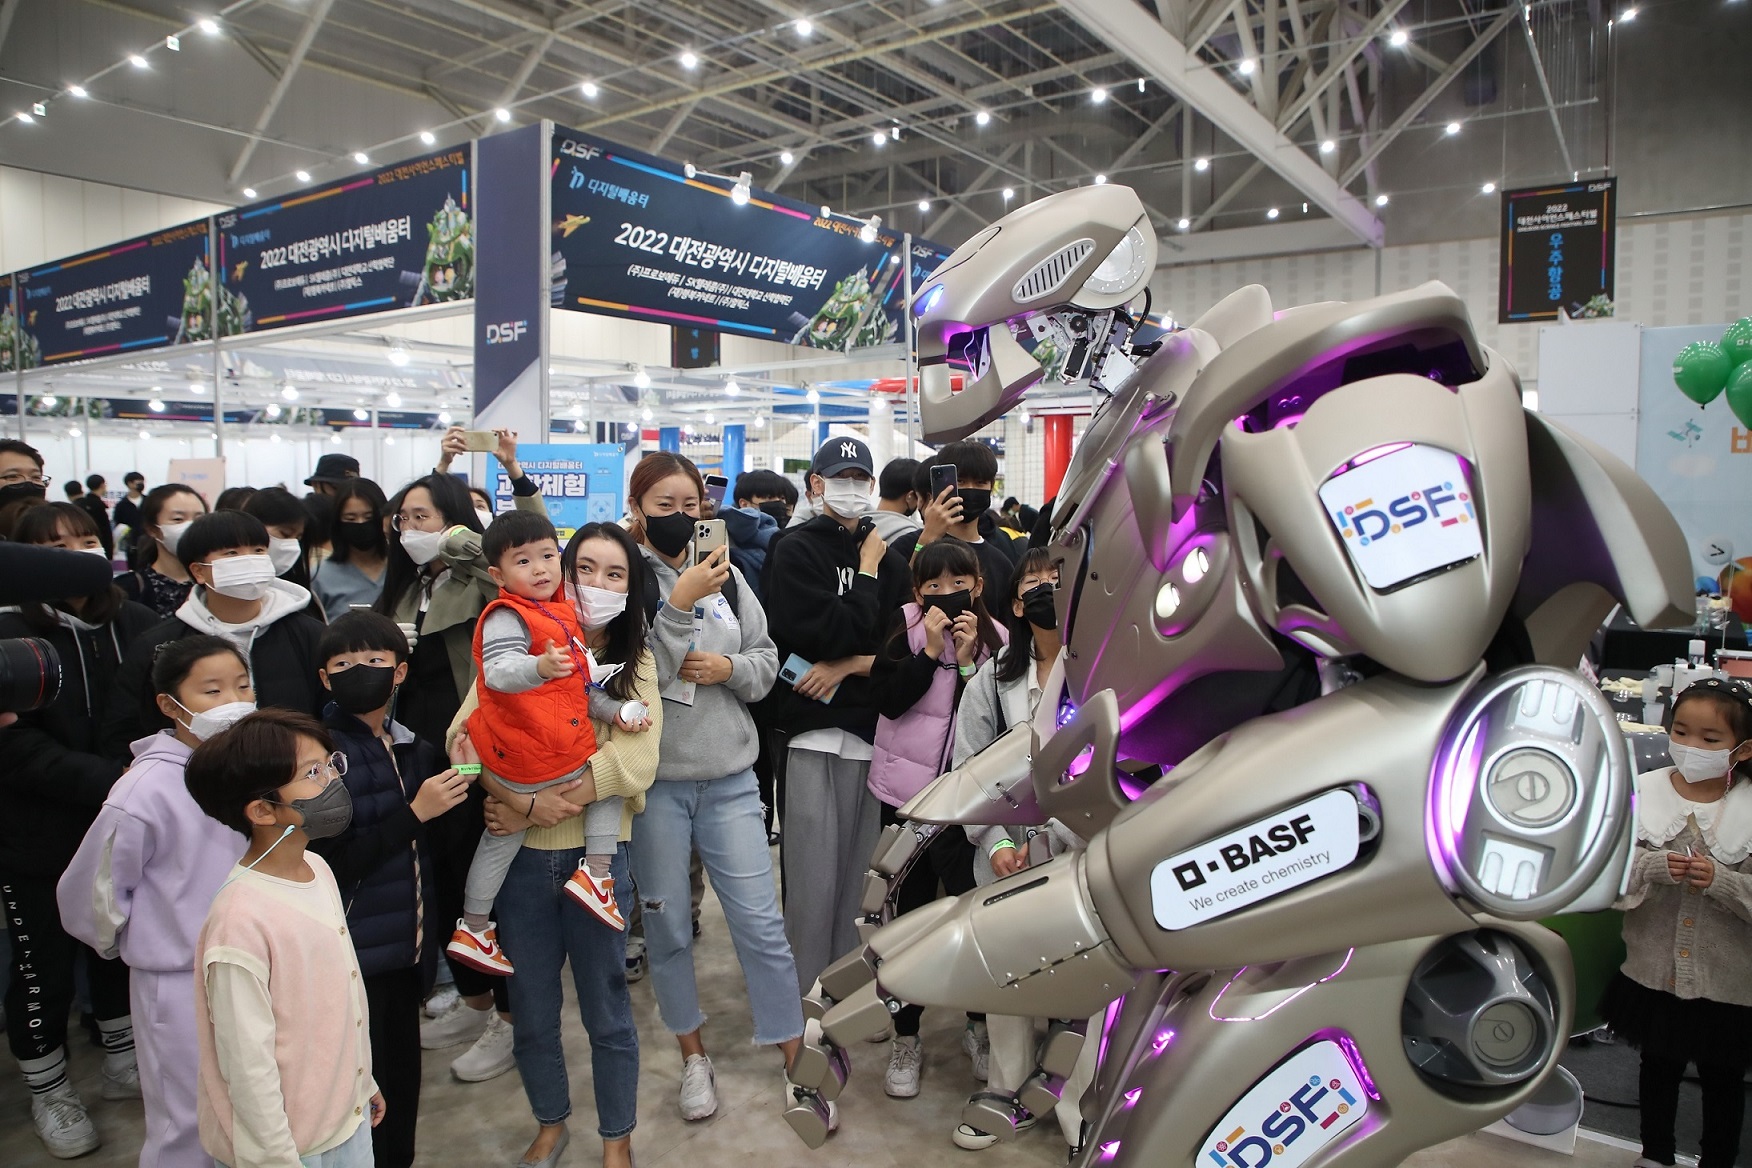 대전사이언스페스티벌을 찾은 관람객들이 로봇을 보면서 즐거워하고 있다. 대전시 제공